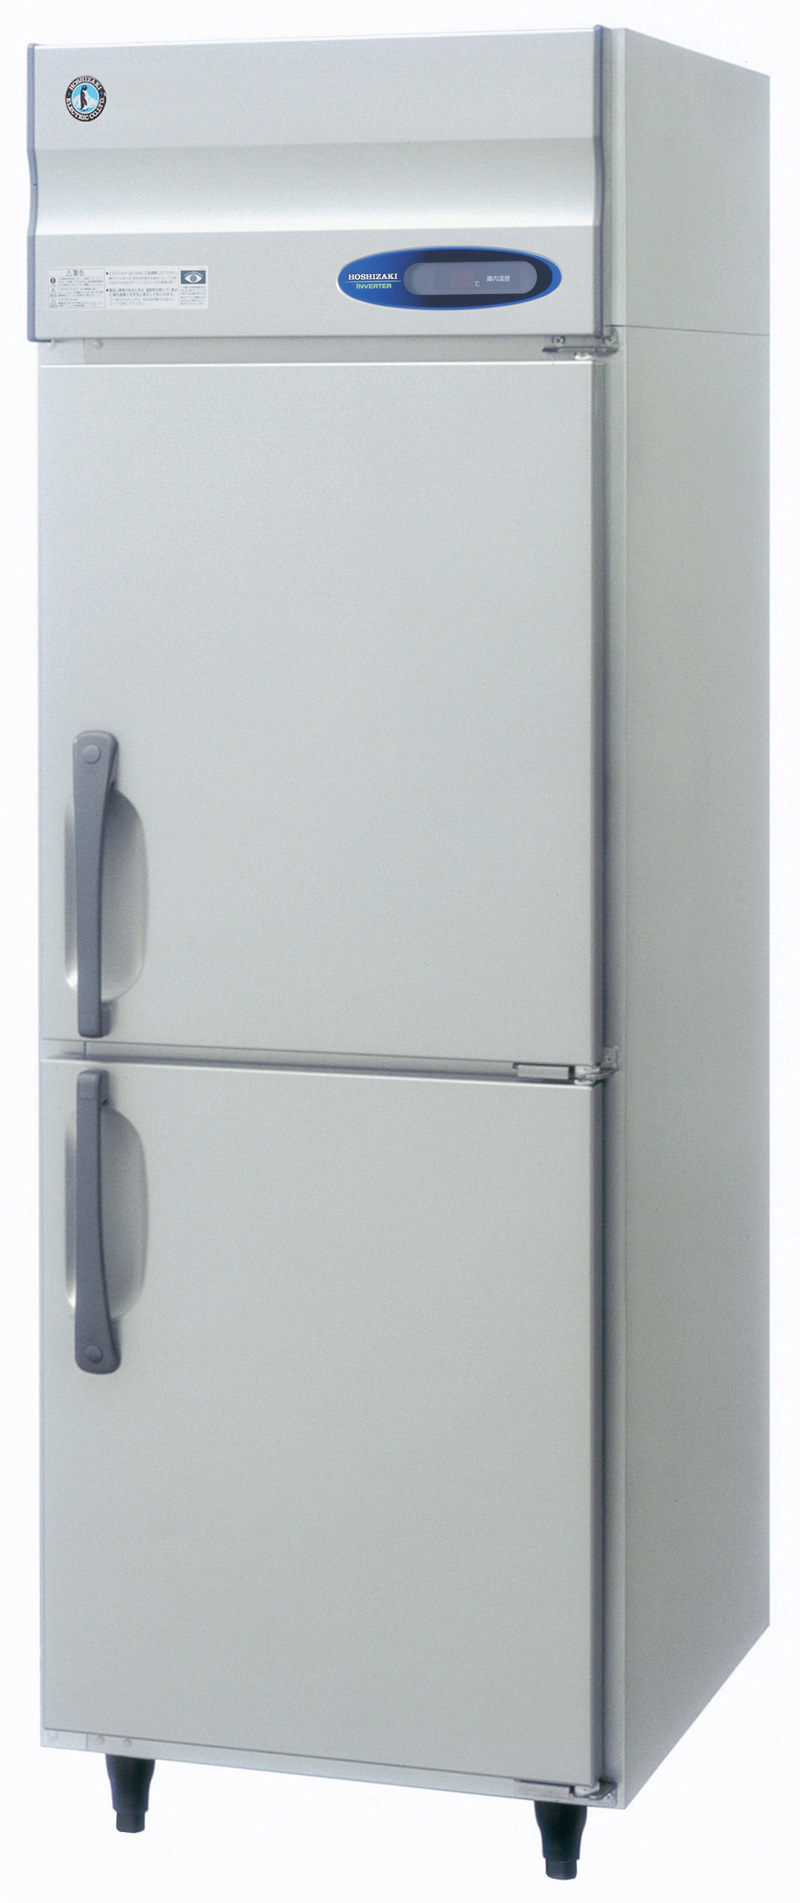 日本国産 ホシザキ インバーター 業務用冷凍冷蔵庫 店舗用品